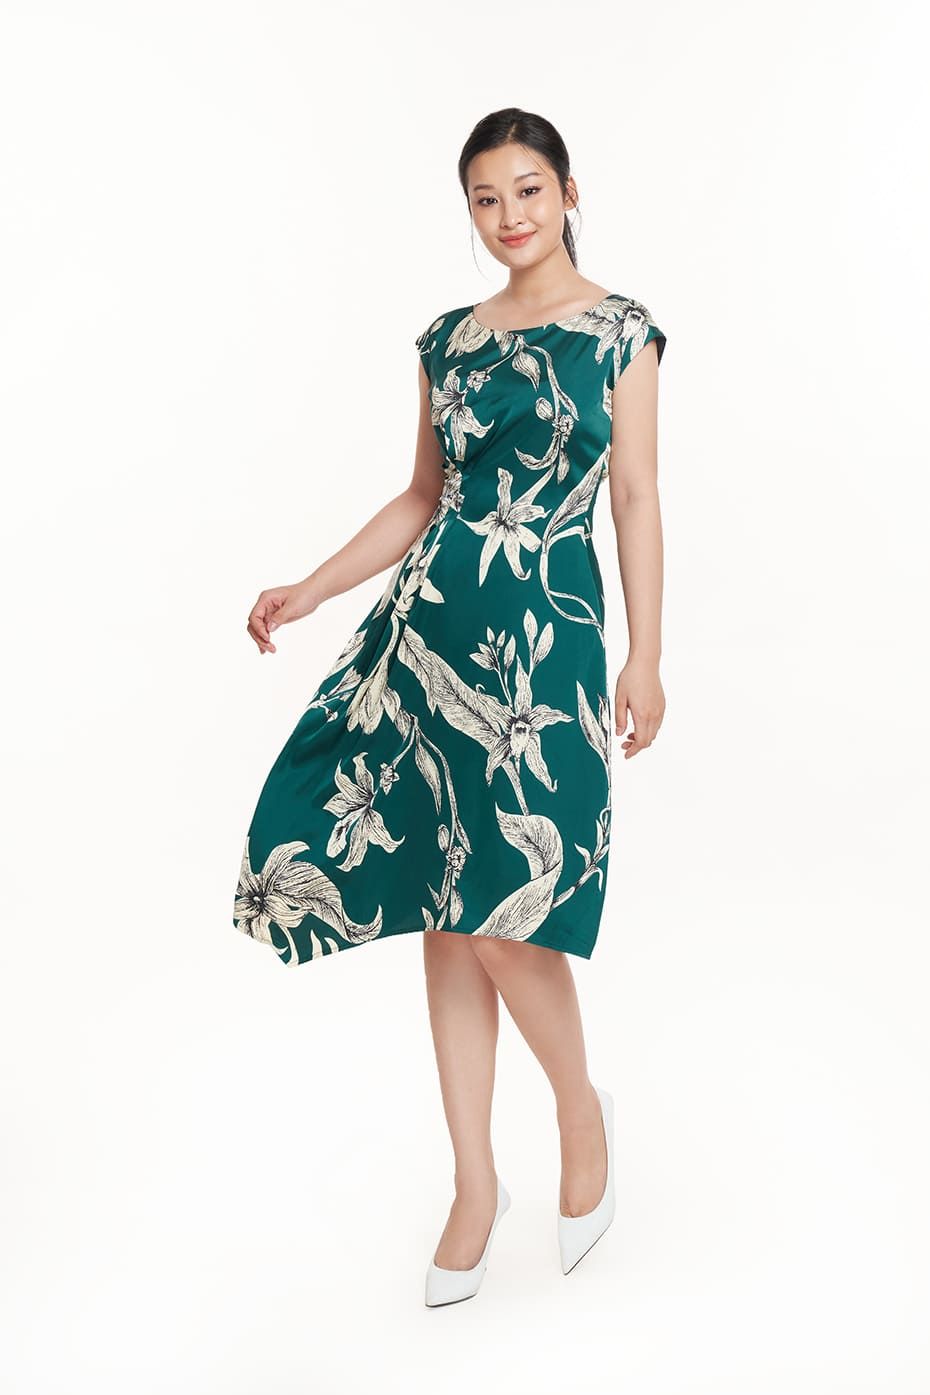 Đầm thời trang Nữ cổ thuyền in họa tiết N&M 2306002